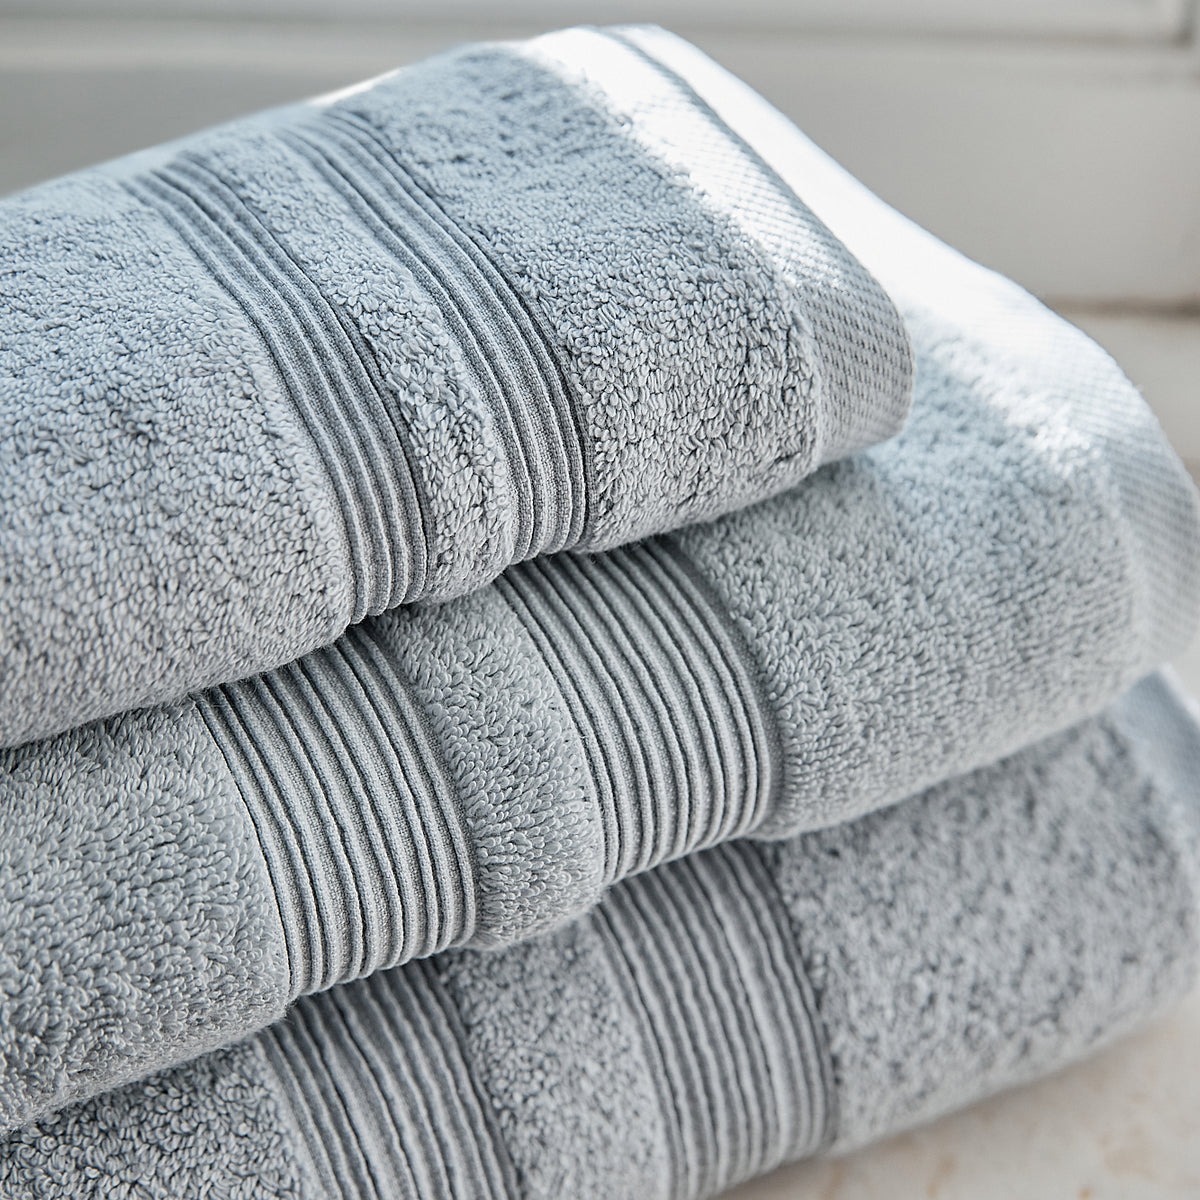 Torres Novas towels – Bath